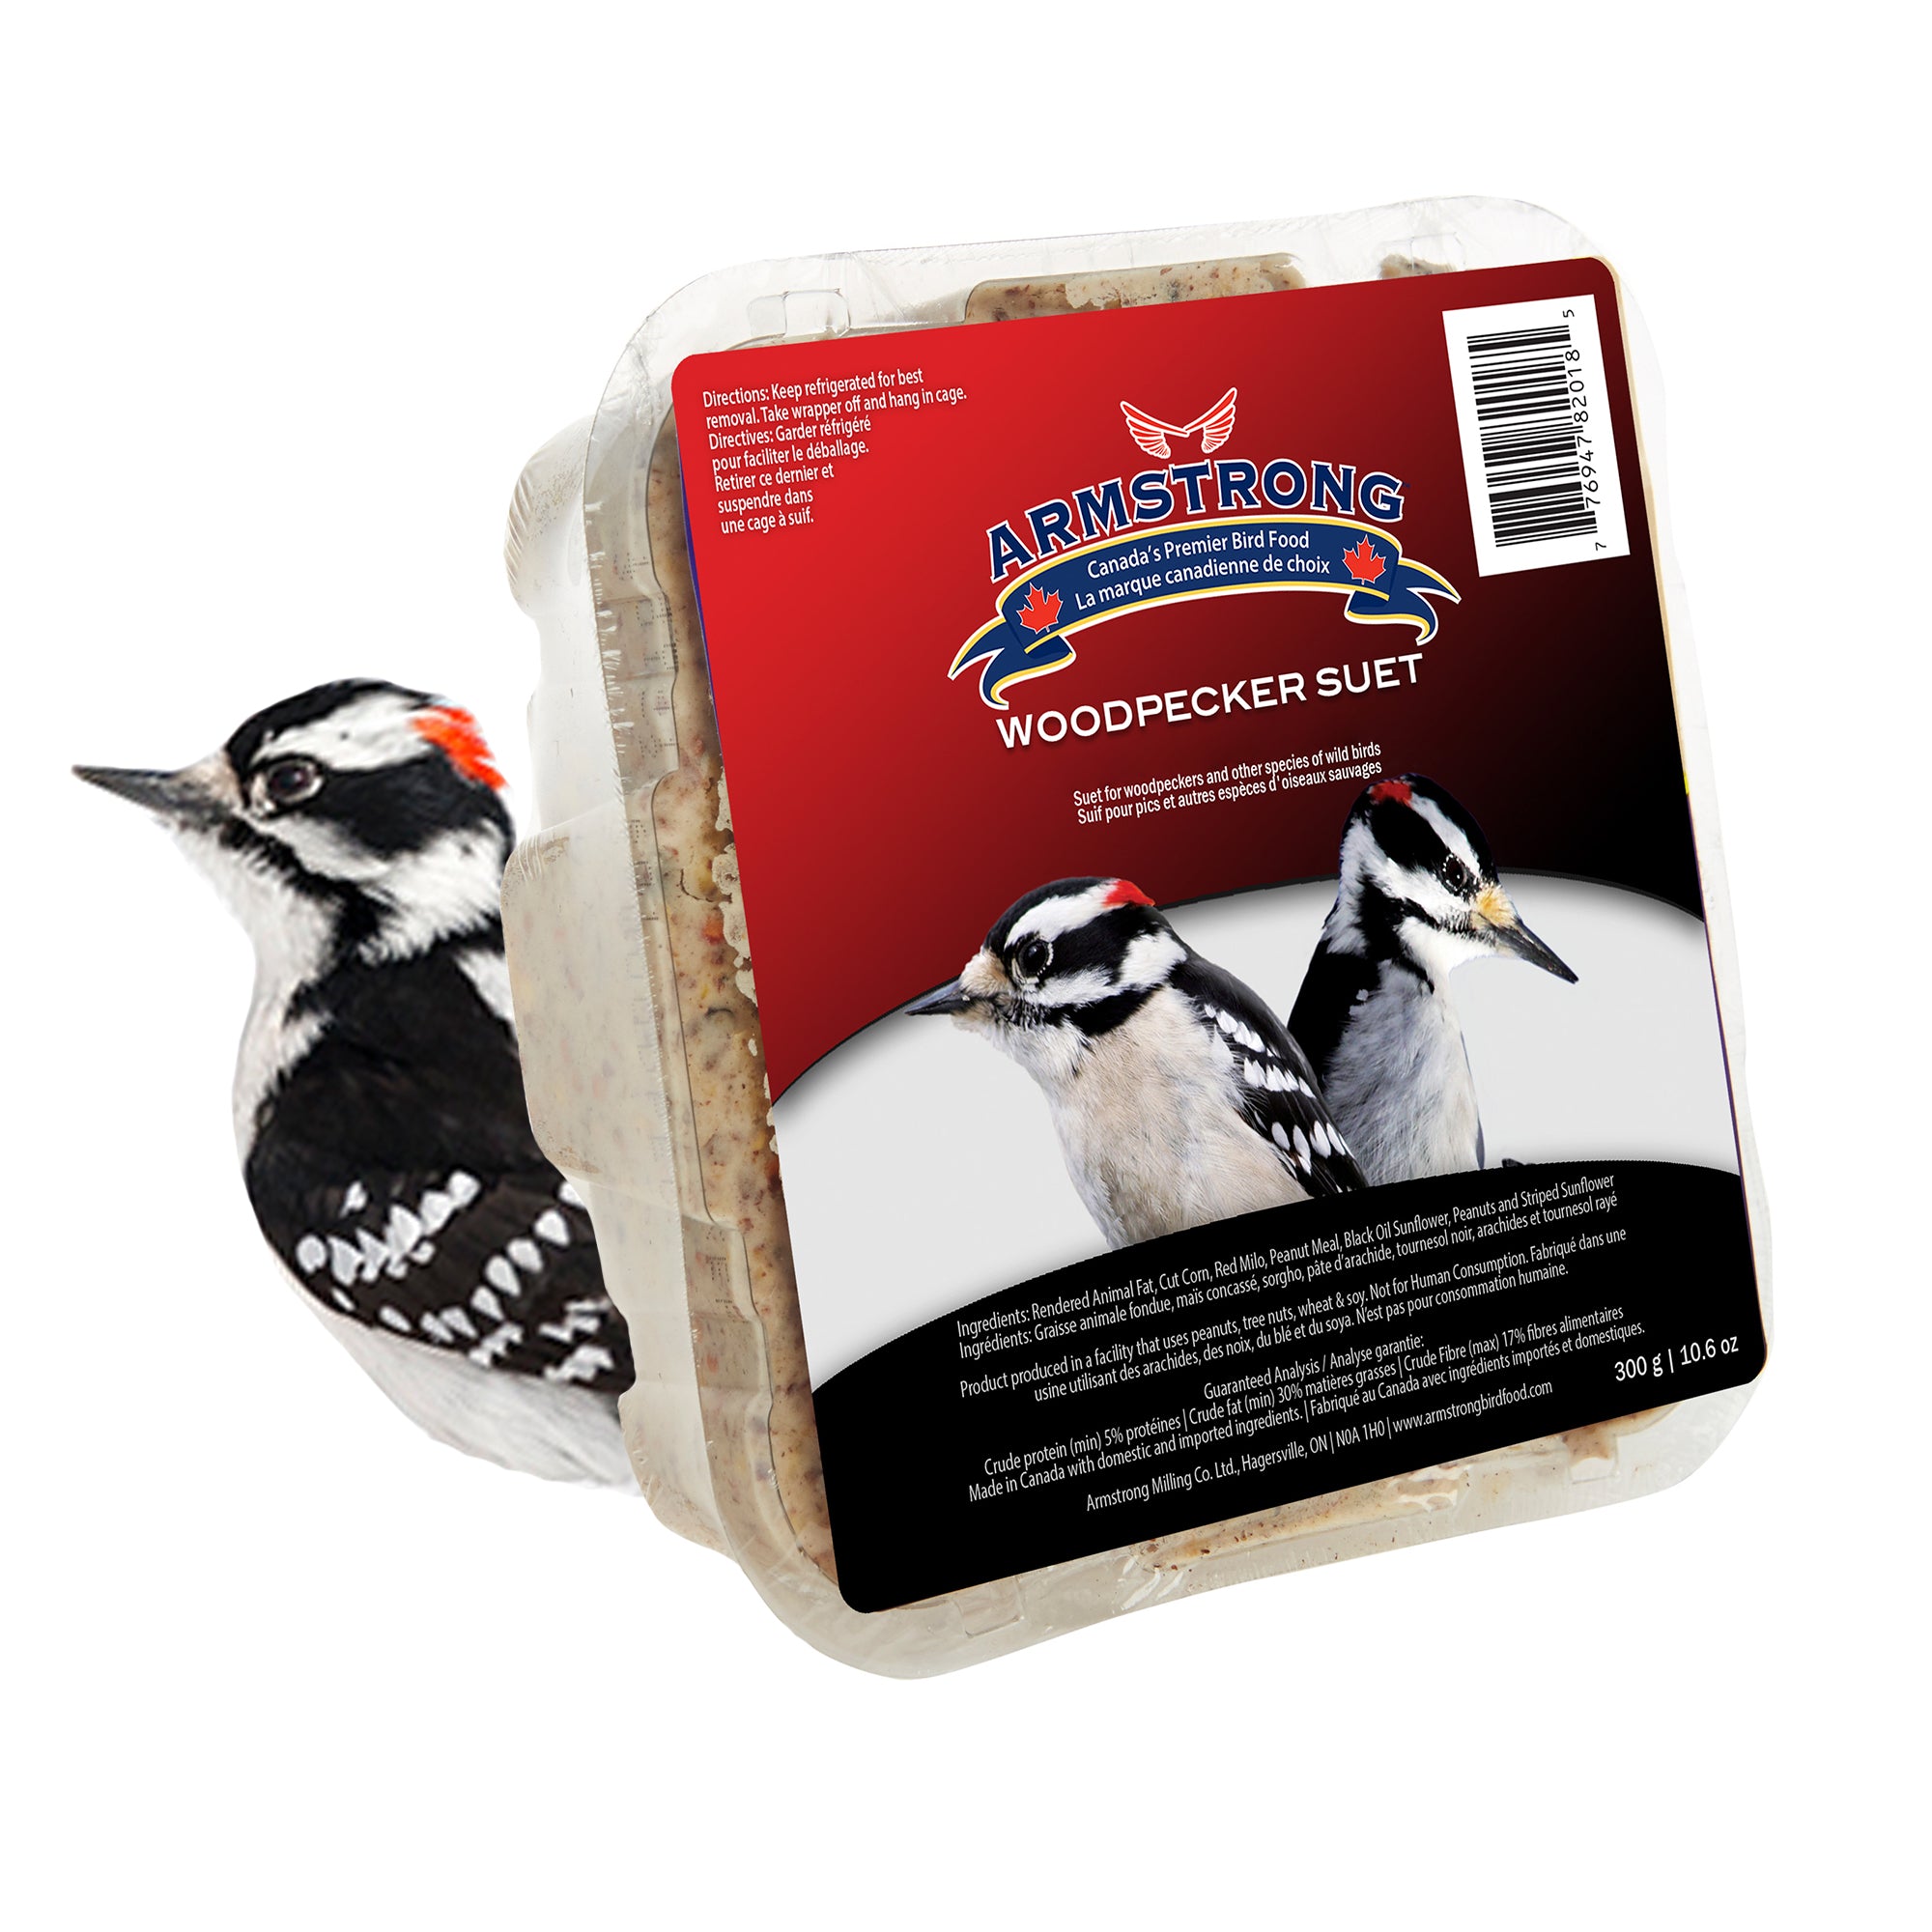 Armstrong Wild Bird Food Woodpecker Suet Blend, 10.6oz (Pack of 12)